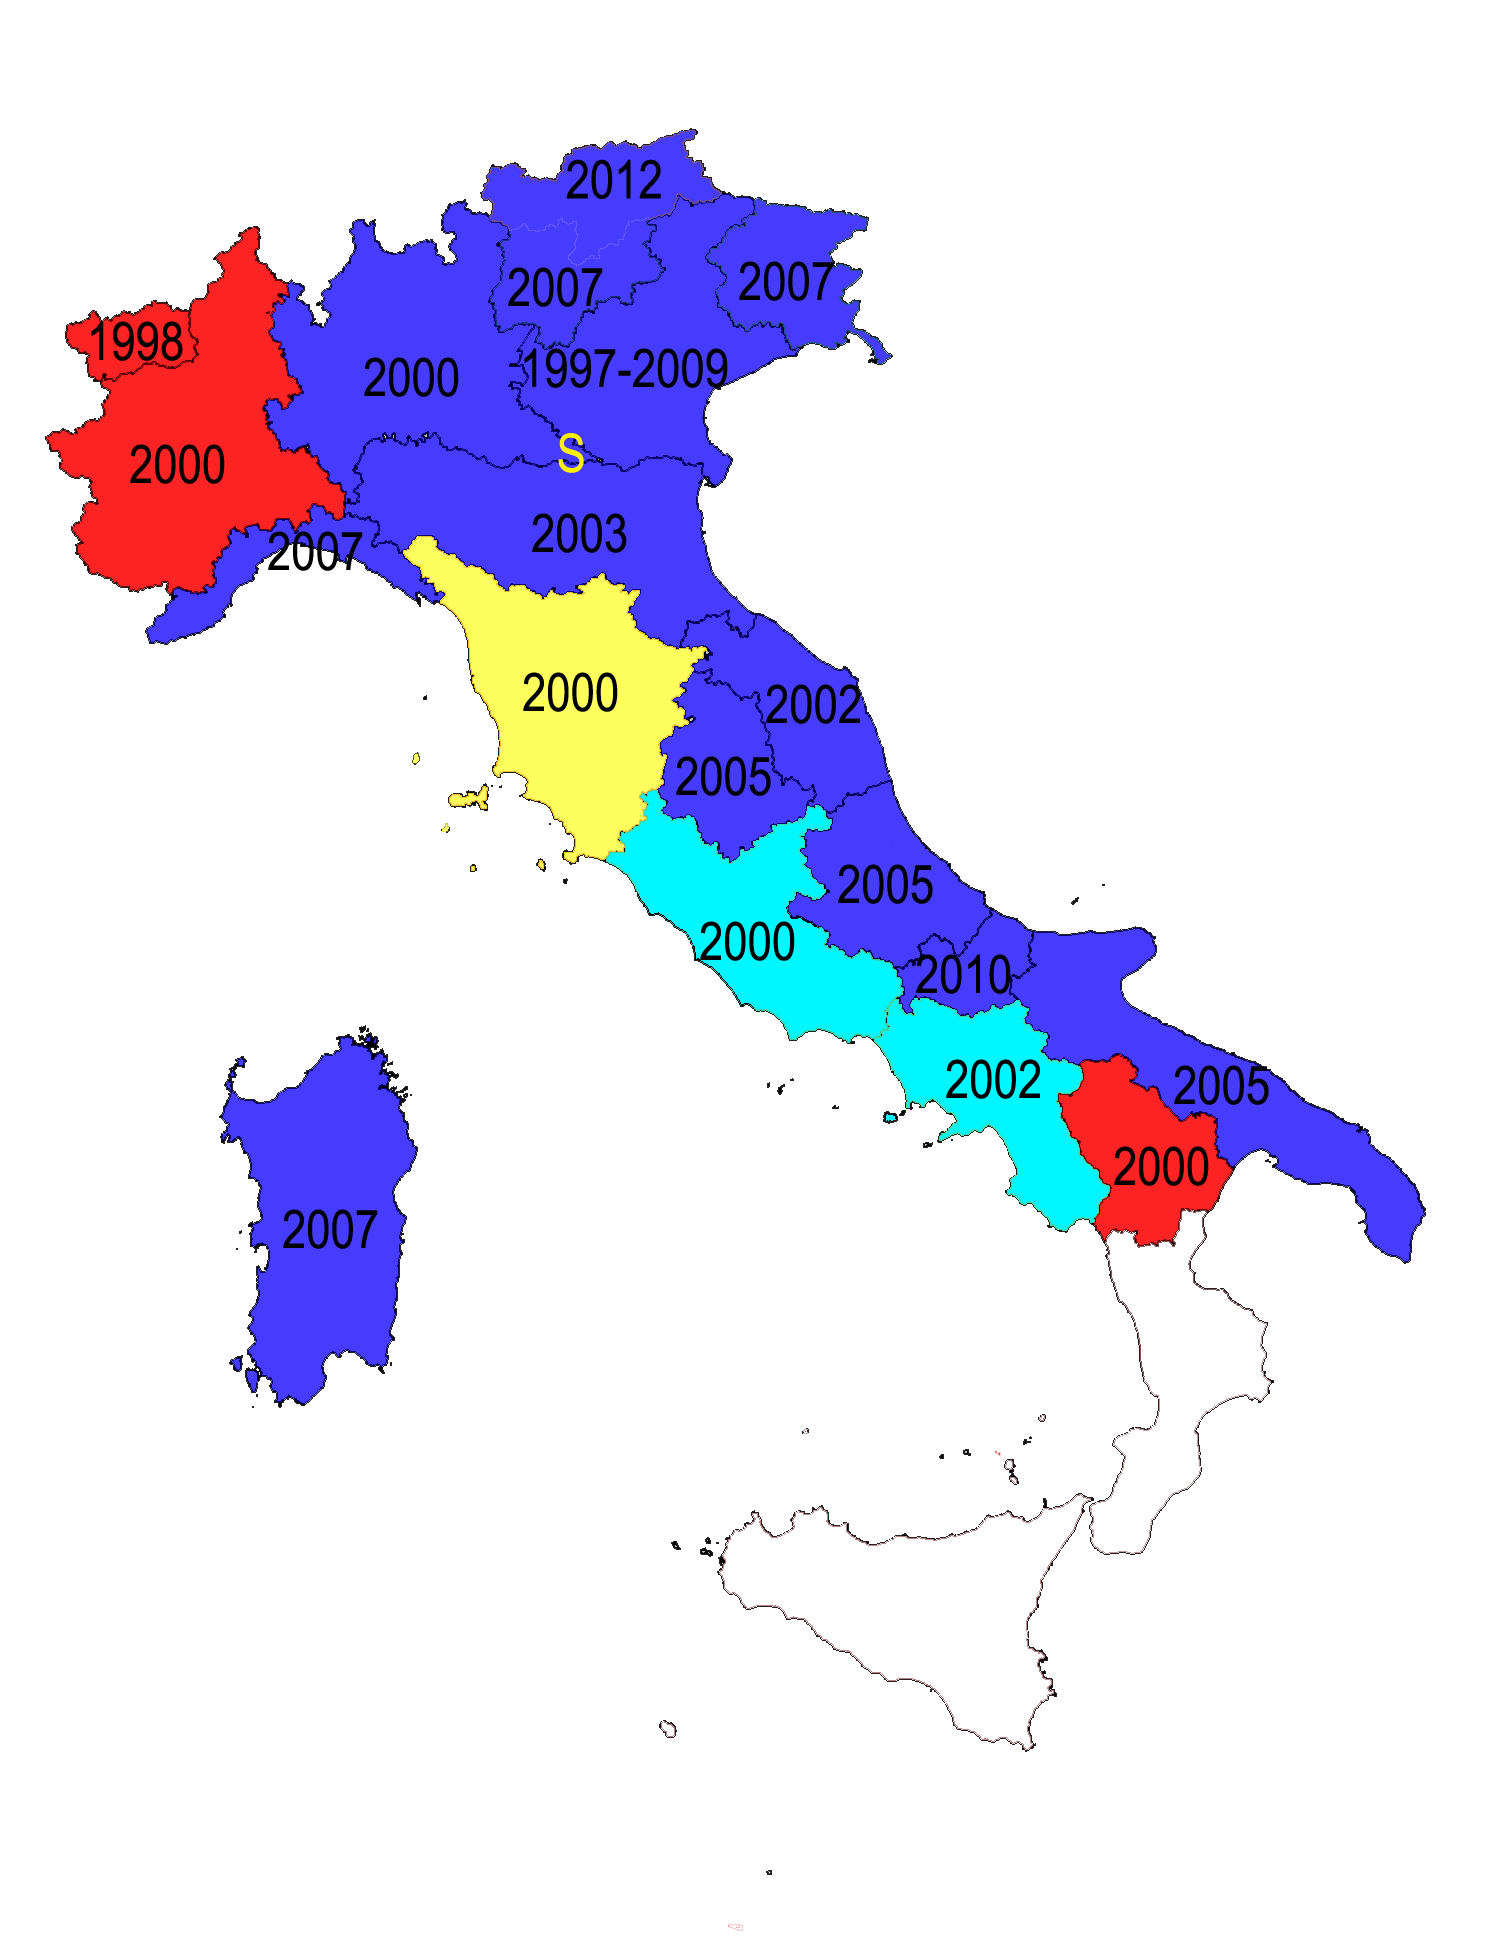 Obrázek 1. Mapa Itálie znázorňující, které regiony mají jaké zákony o venkovním osvětlování, a kdy vešly v platnost.